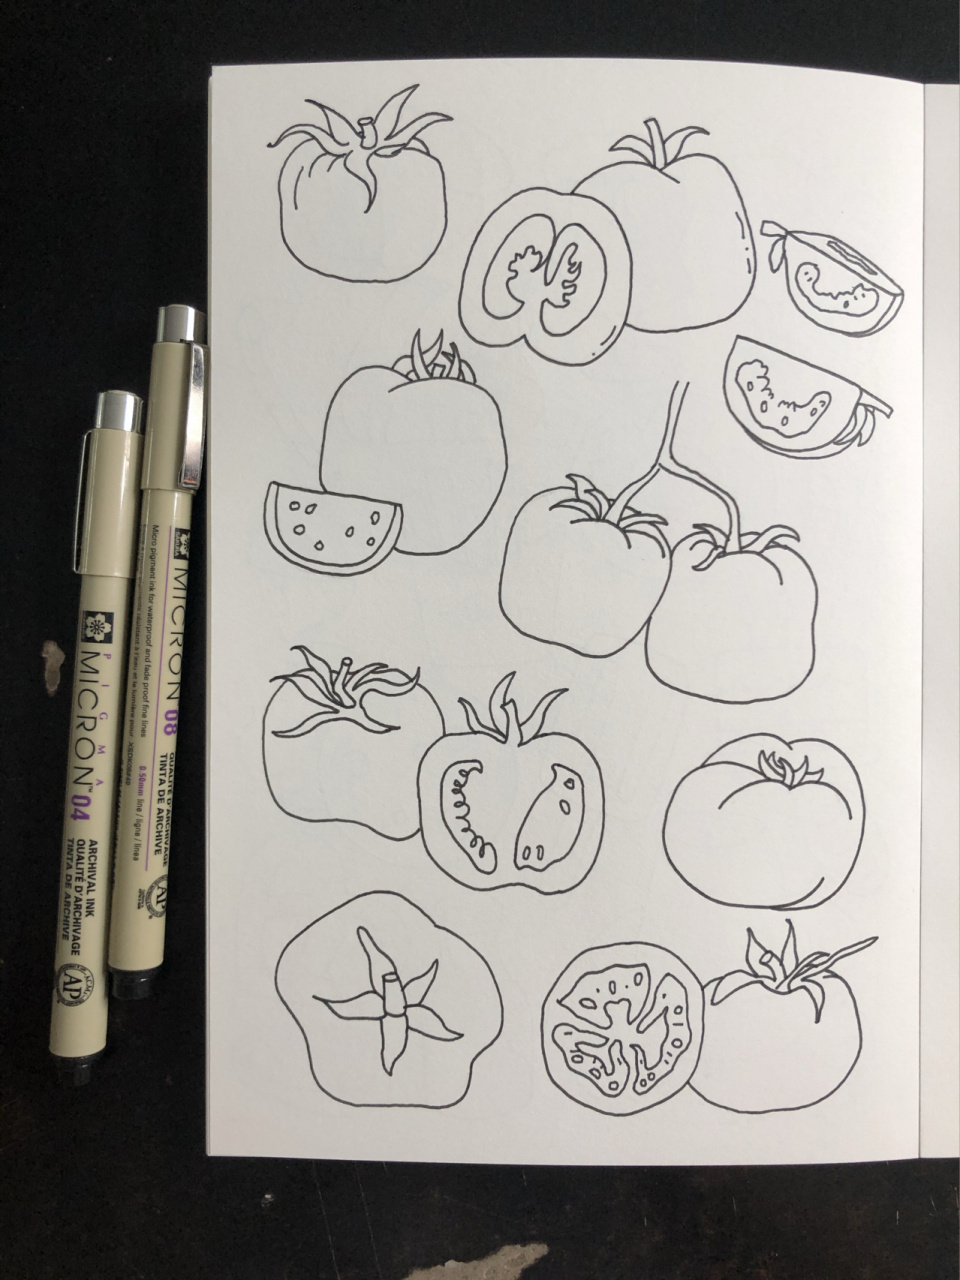 西红柿简笔画怎么画图片